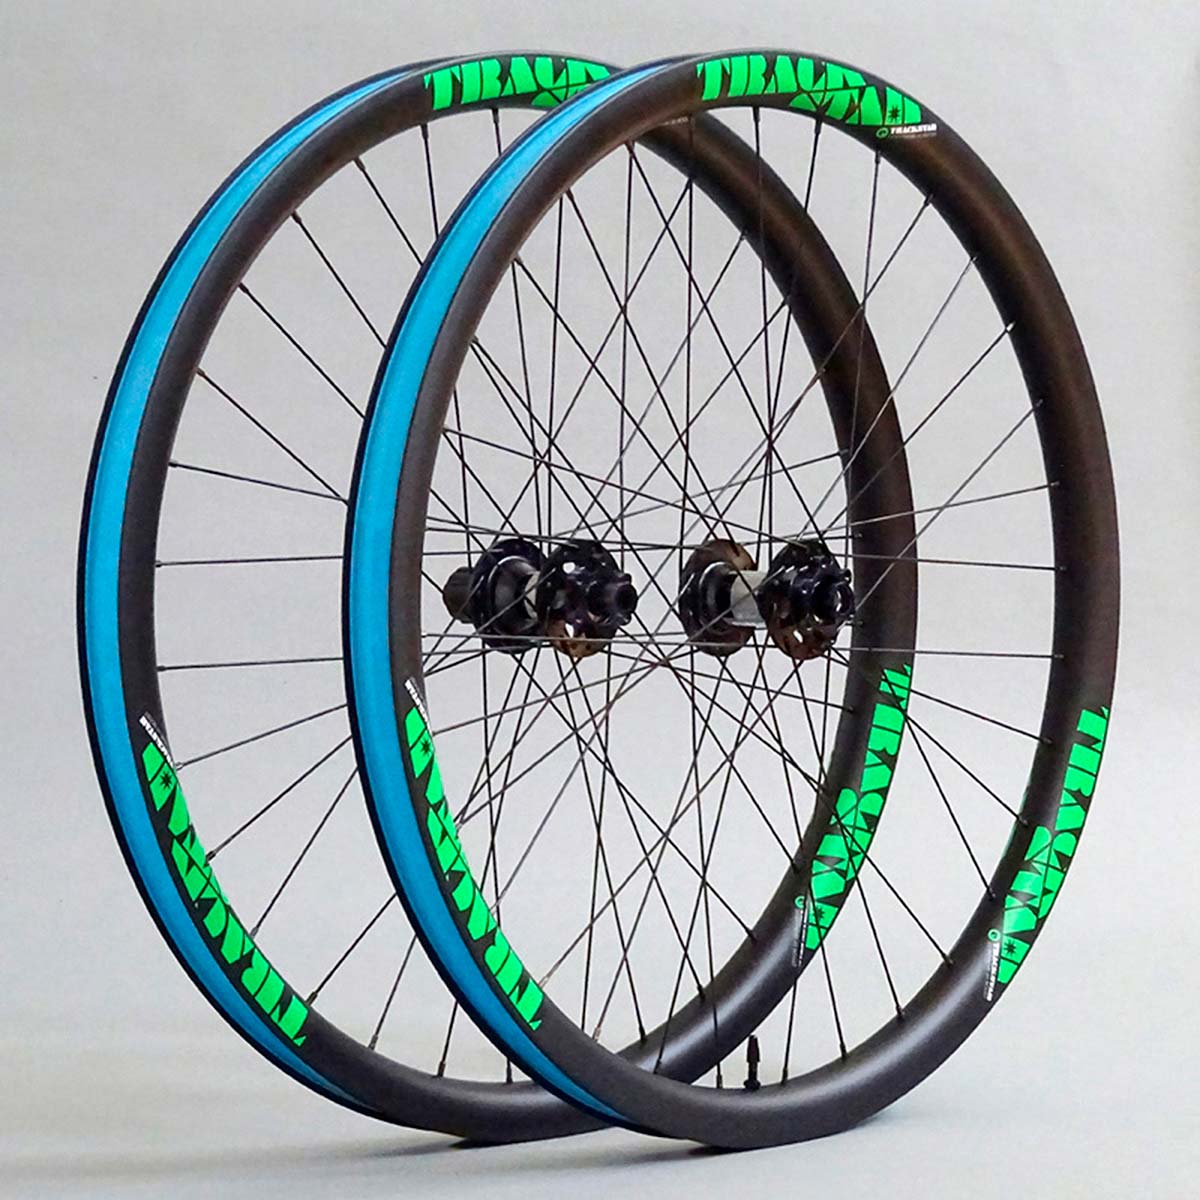 En TodoMountainBike: Trackstar presenta la Serie-e, su gama de ruedas de carbono para bicicletas eléctricas